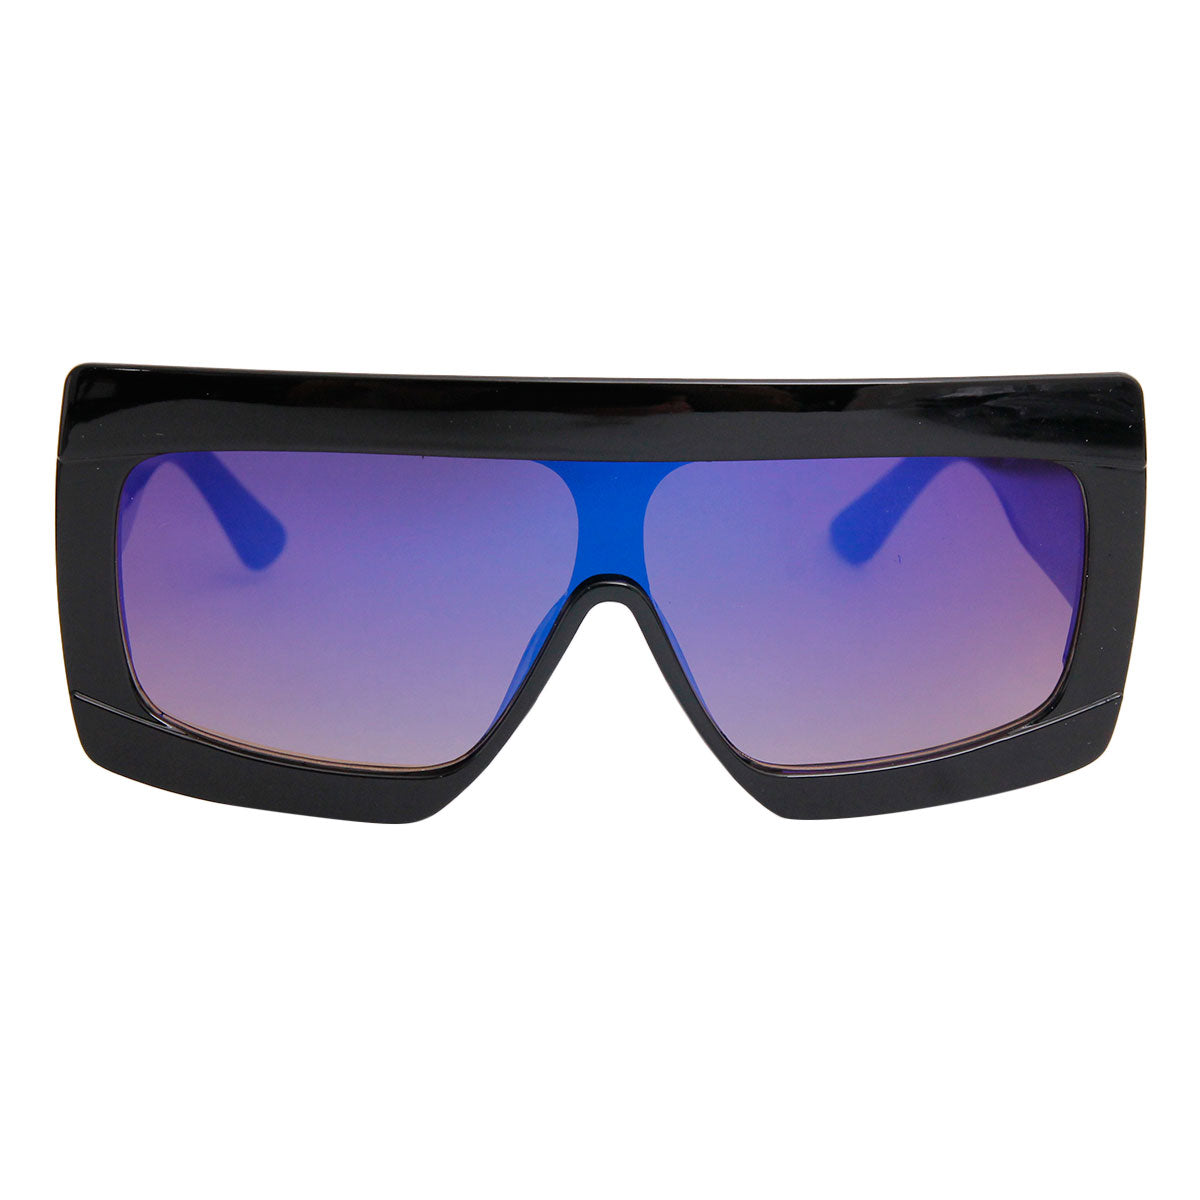 Blue Lens Celine Style Modern Visor Sunglasses